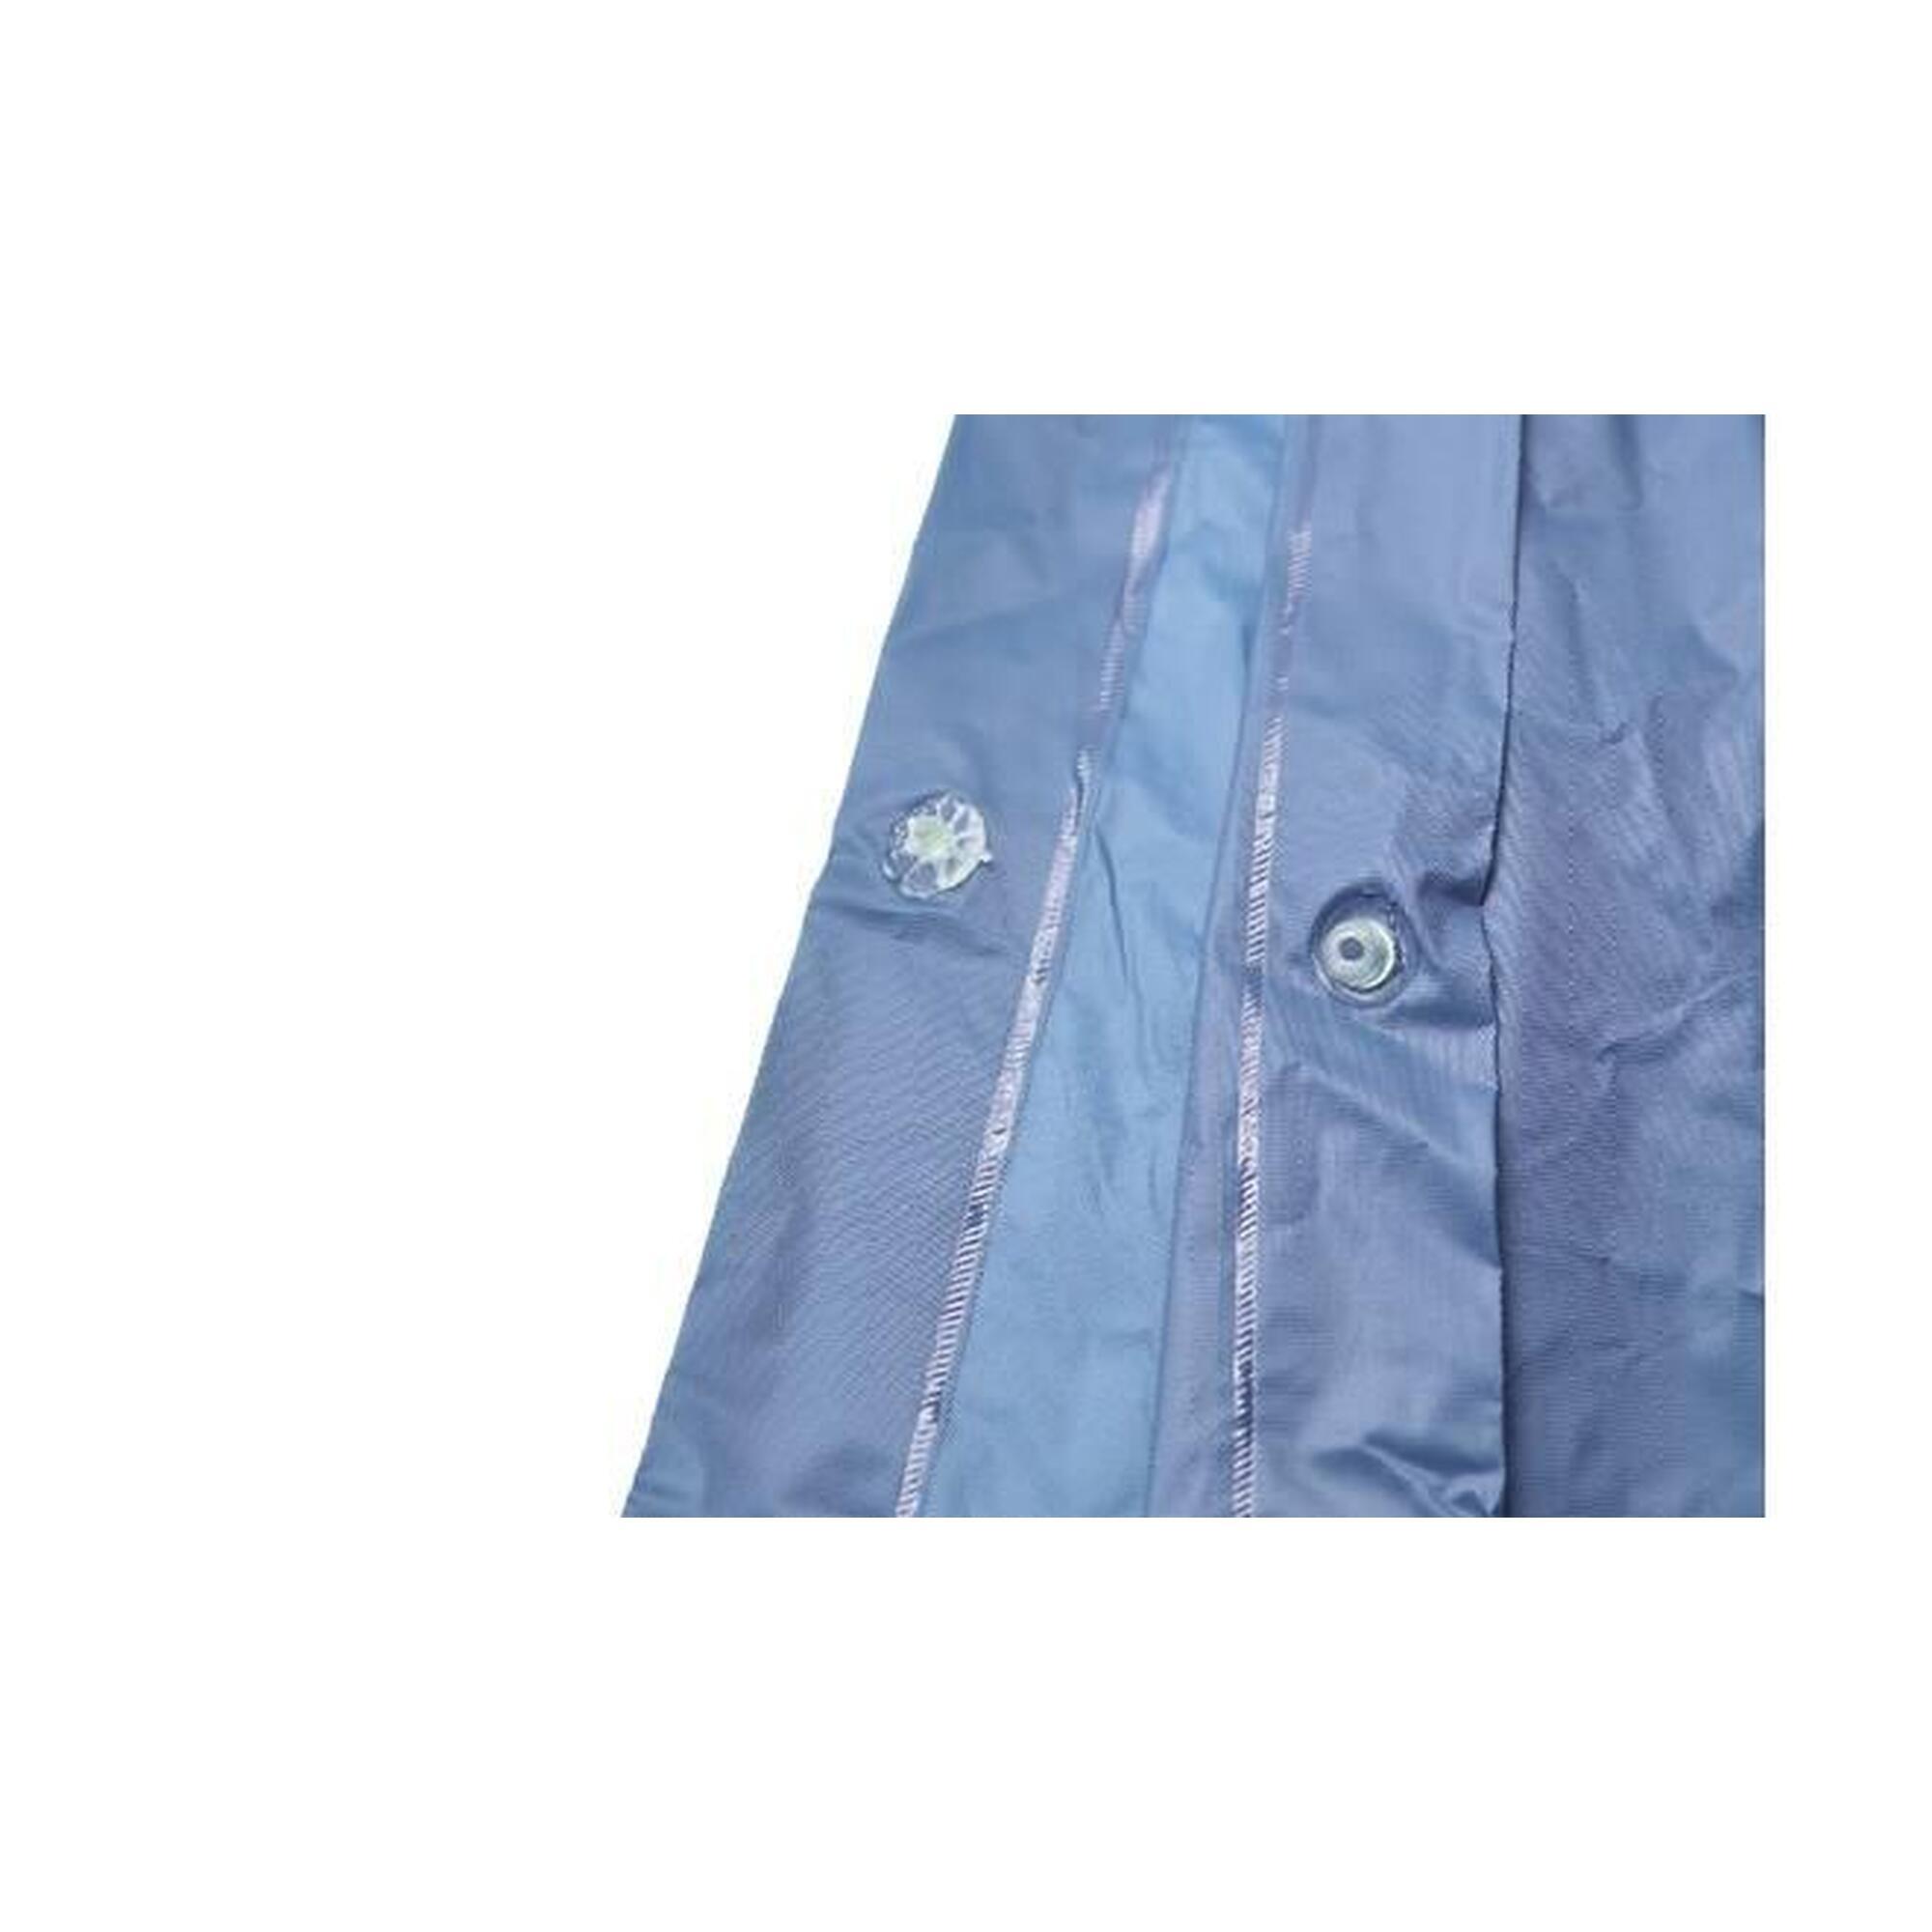 Poncho de pluie bleu 125x126cm - Taille unique